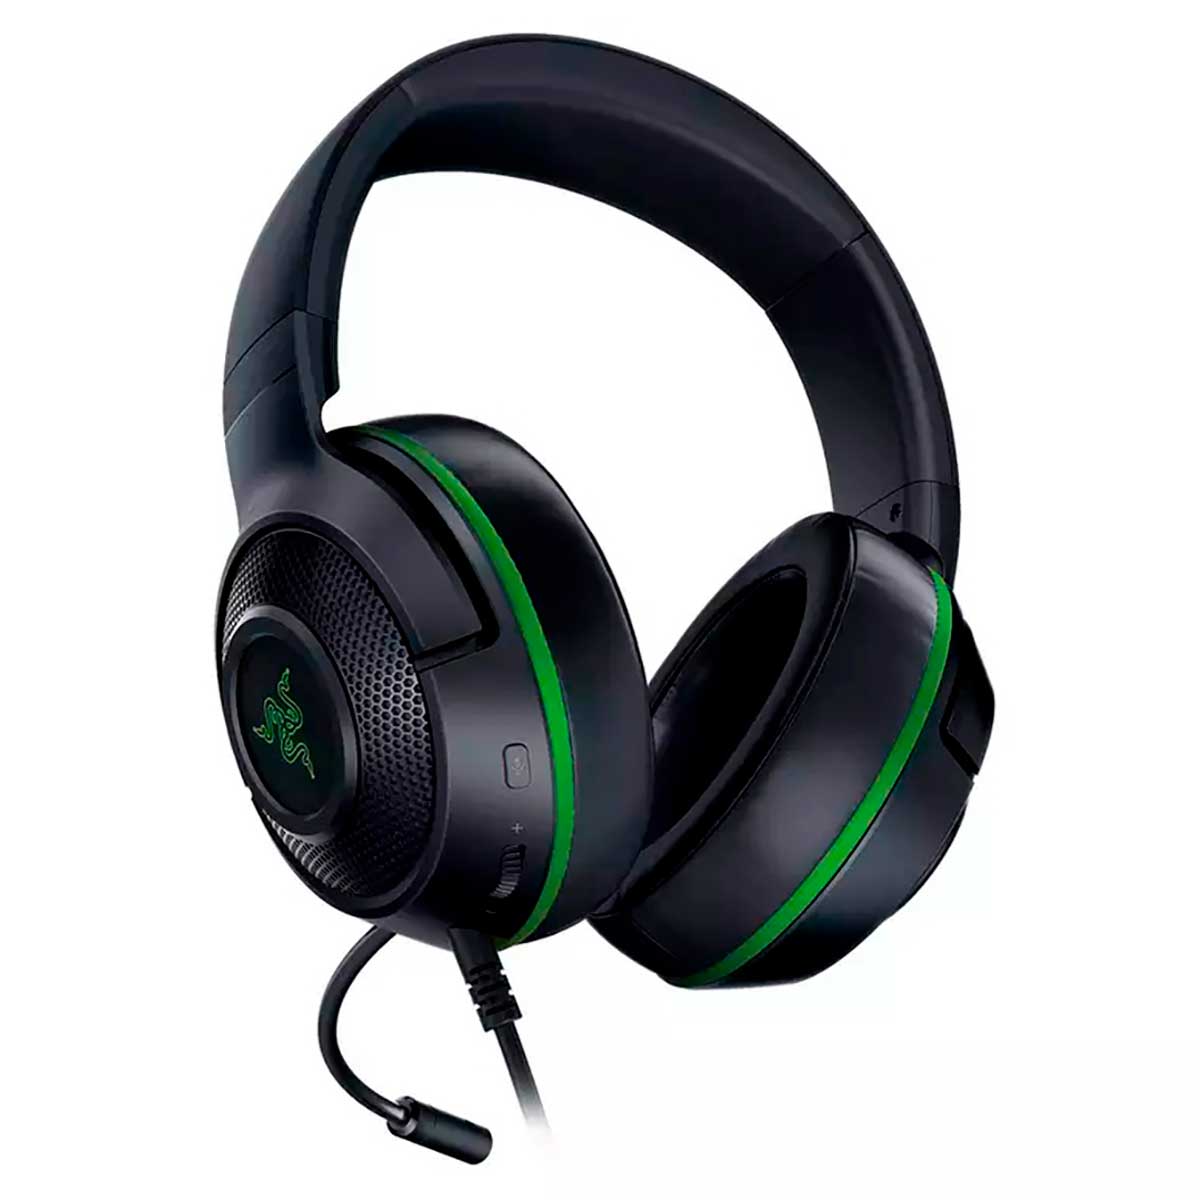 headset-razer-kraken-p3-black-green-3.jpg